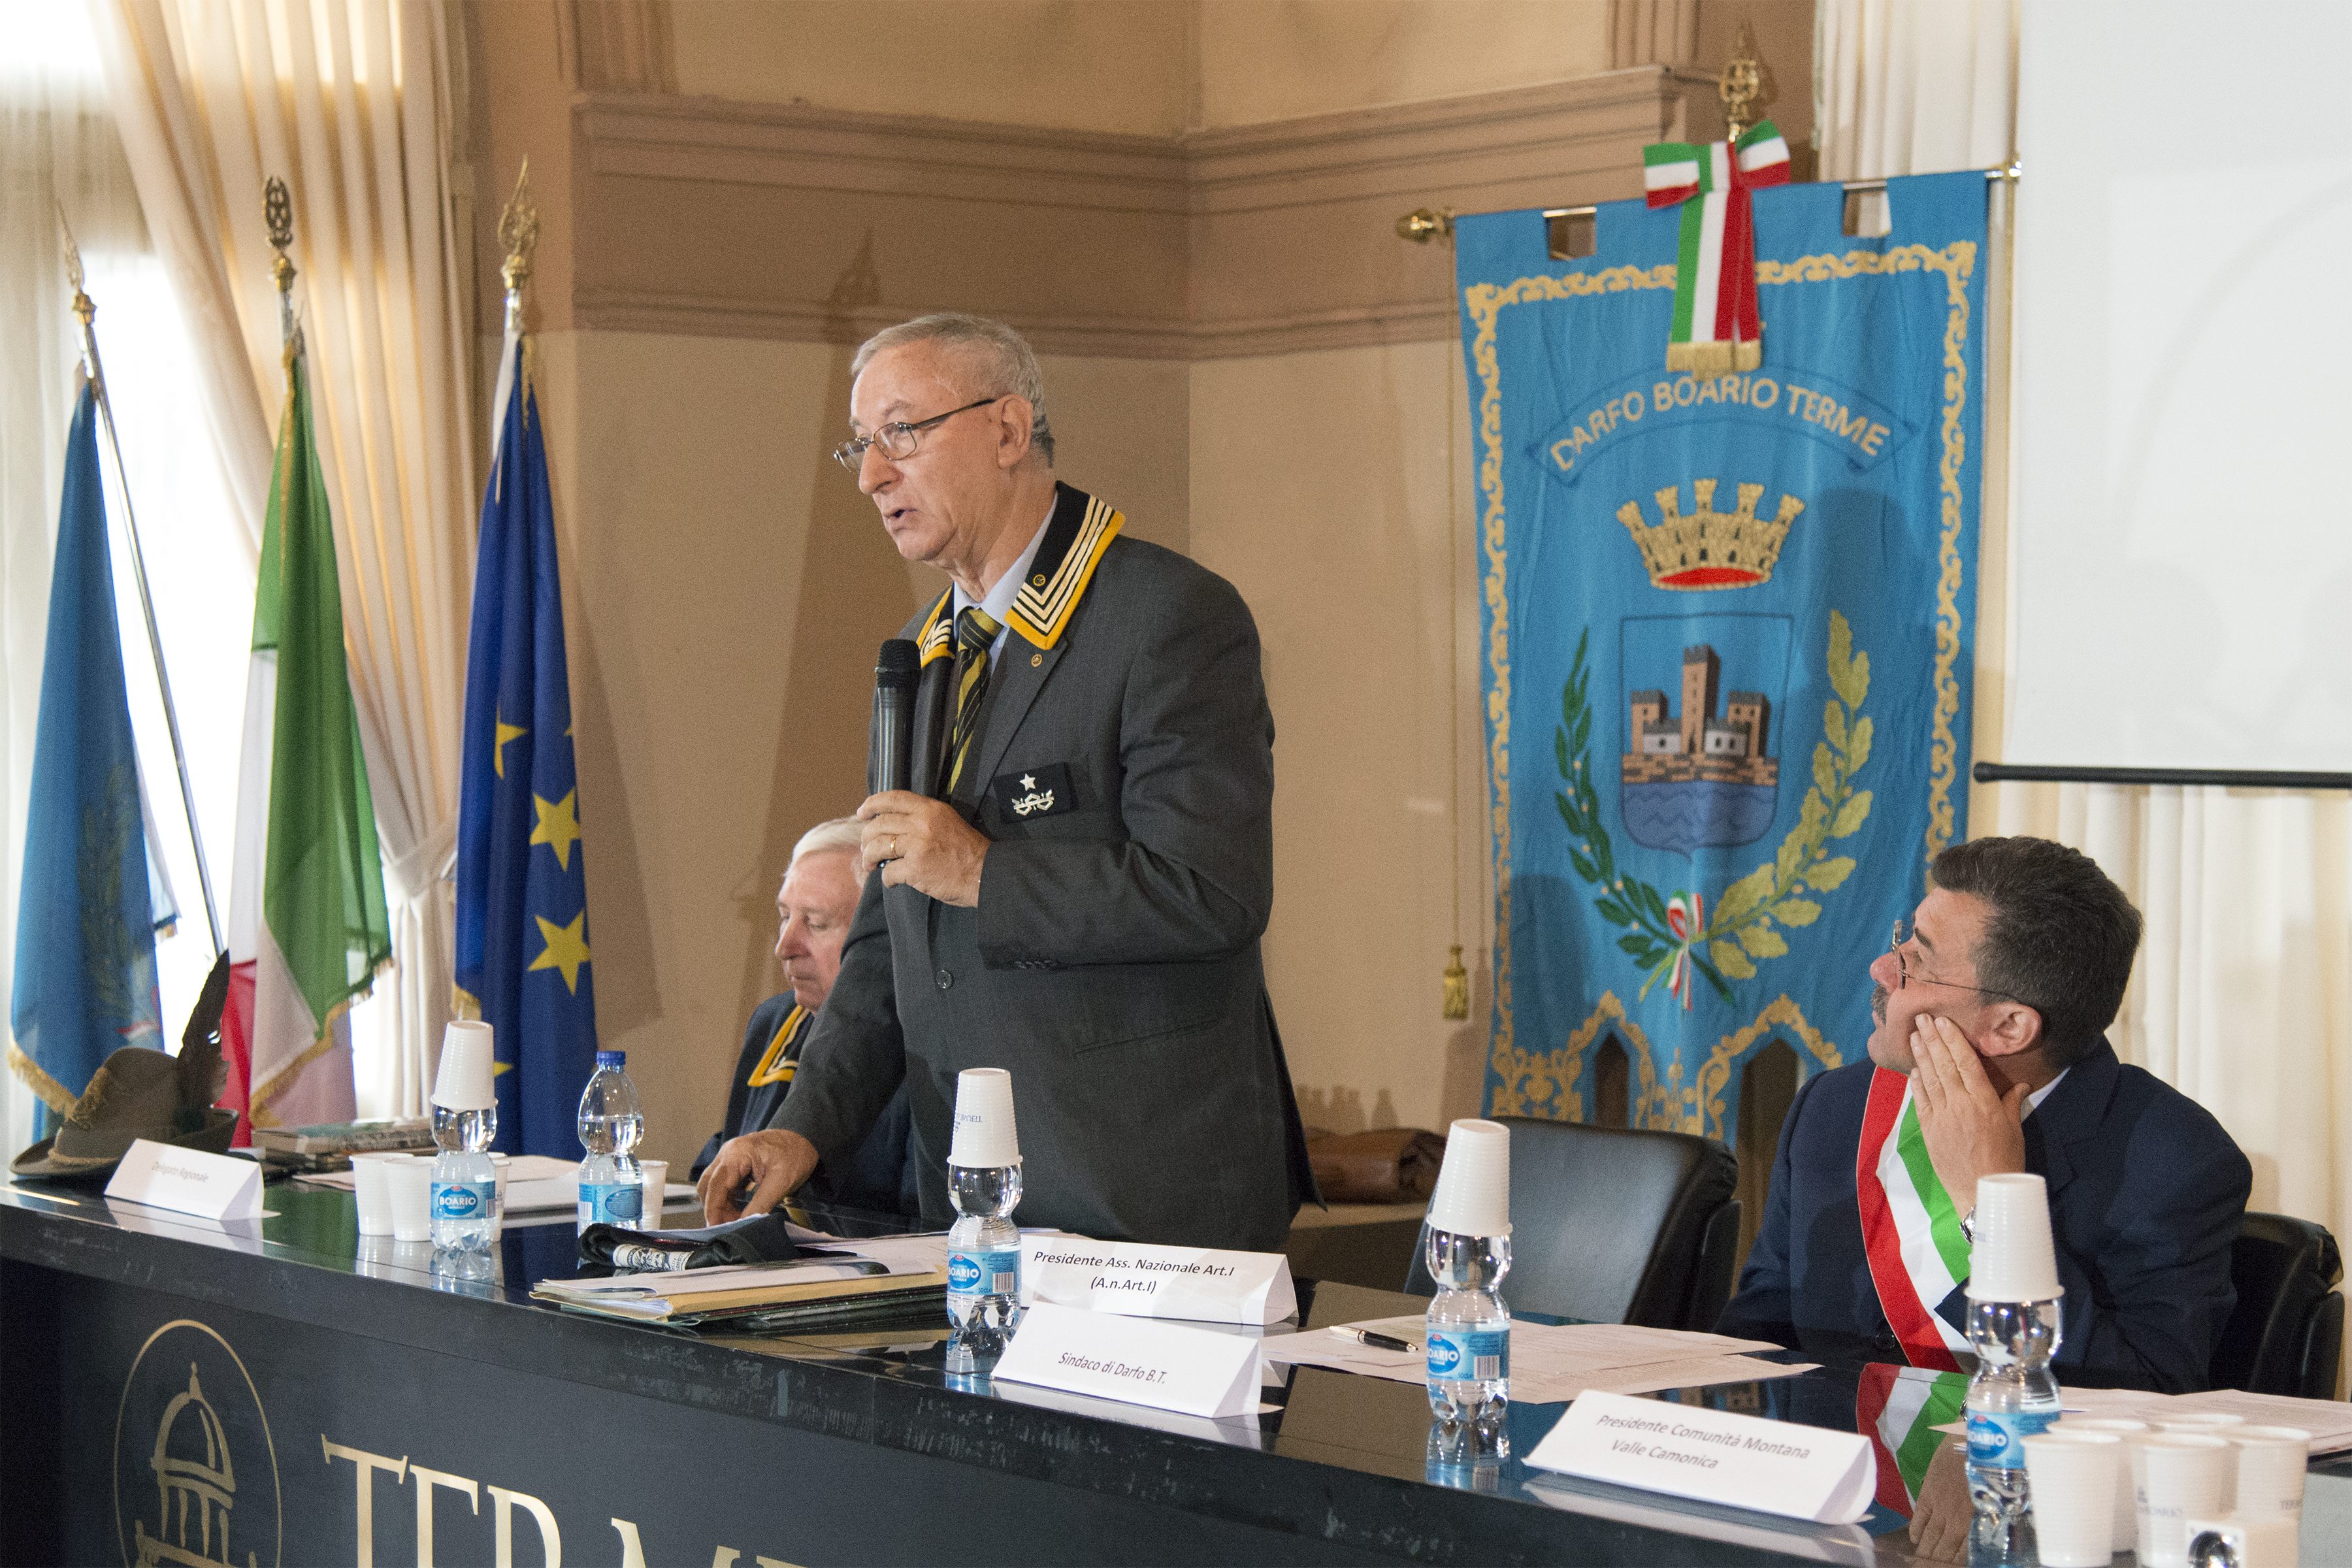 Il Presidente Nazionale Rocco Viglietta e il Sindaco di Darfo Boario Ezio Mondini (Foto M. Bossi)